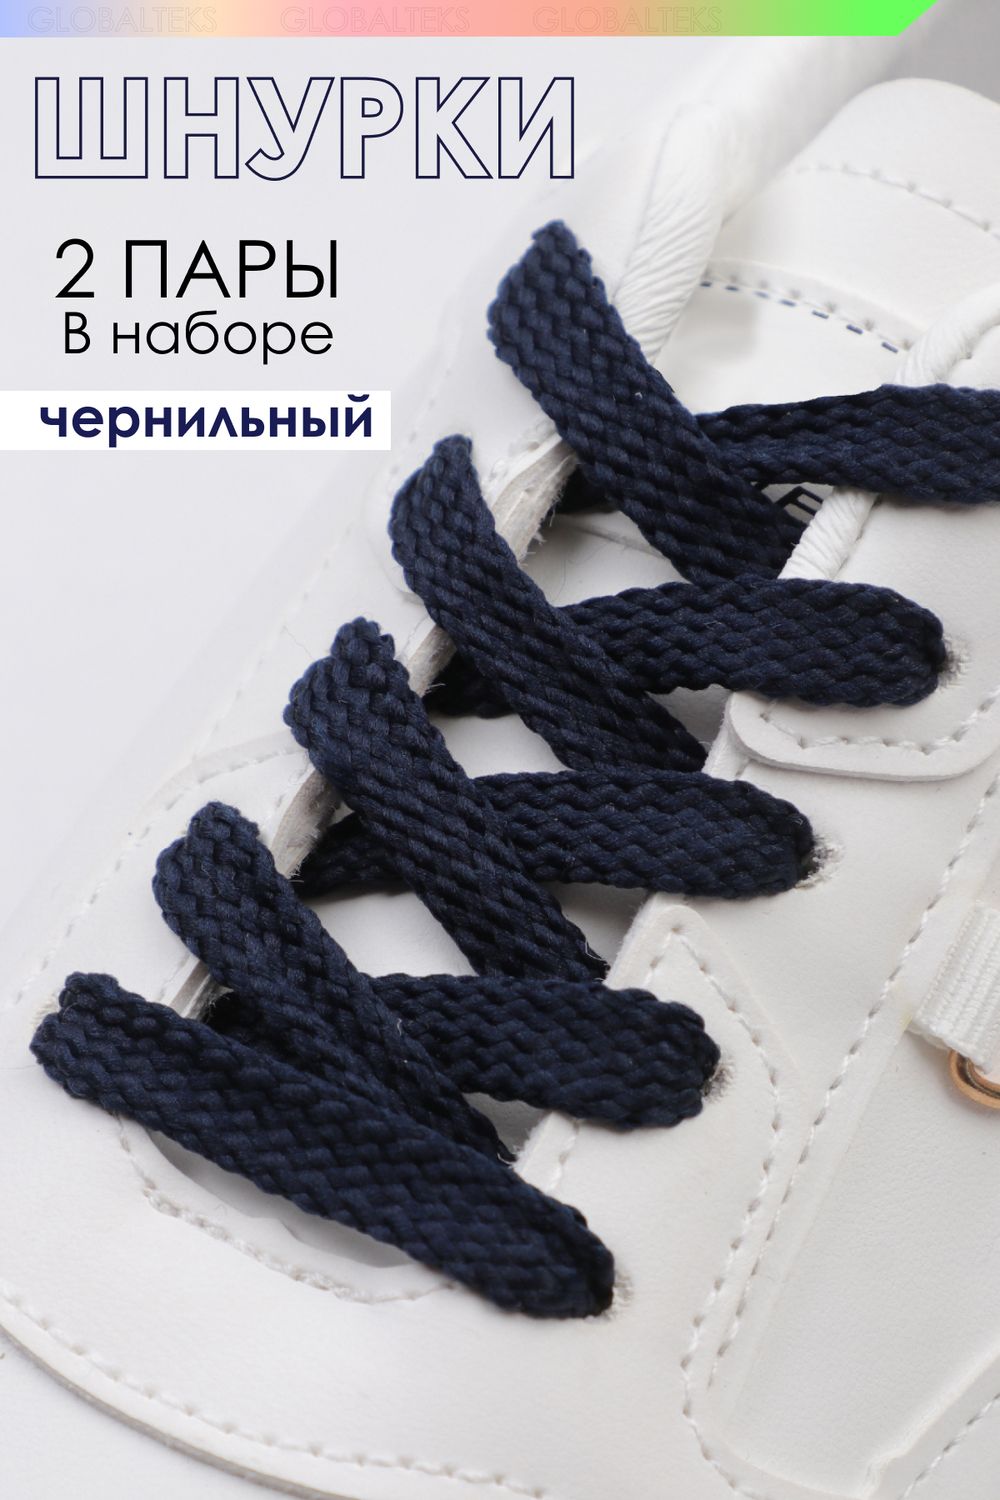 Шнурки для обуви №GL47-1 - чернильный